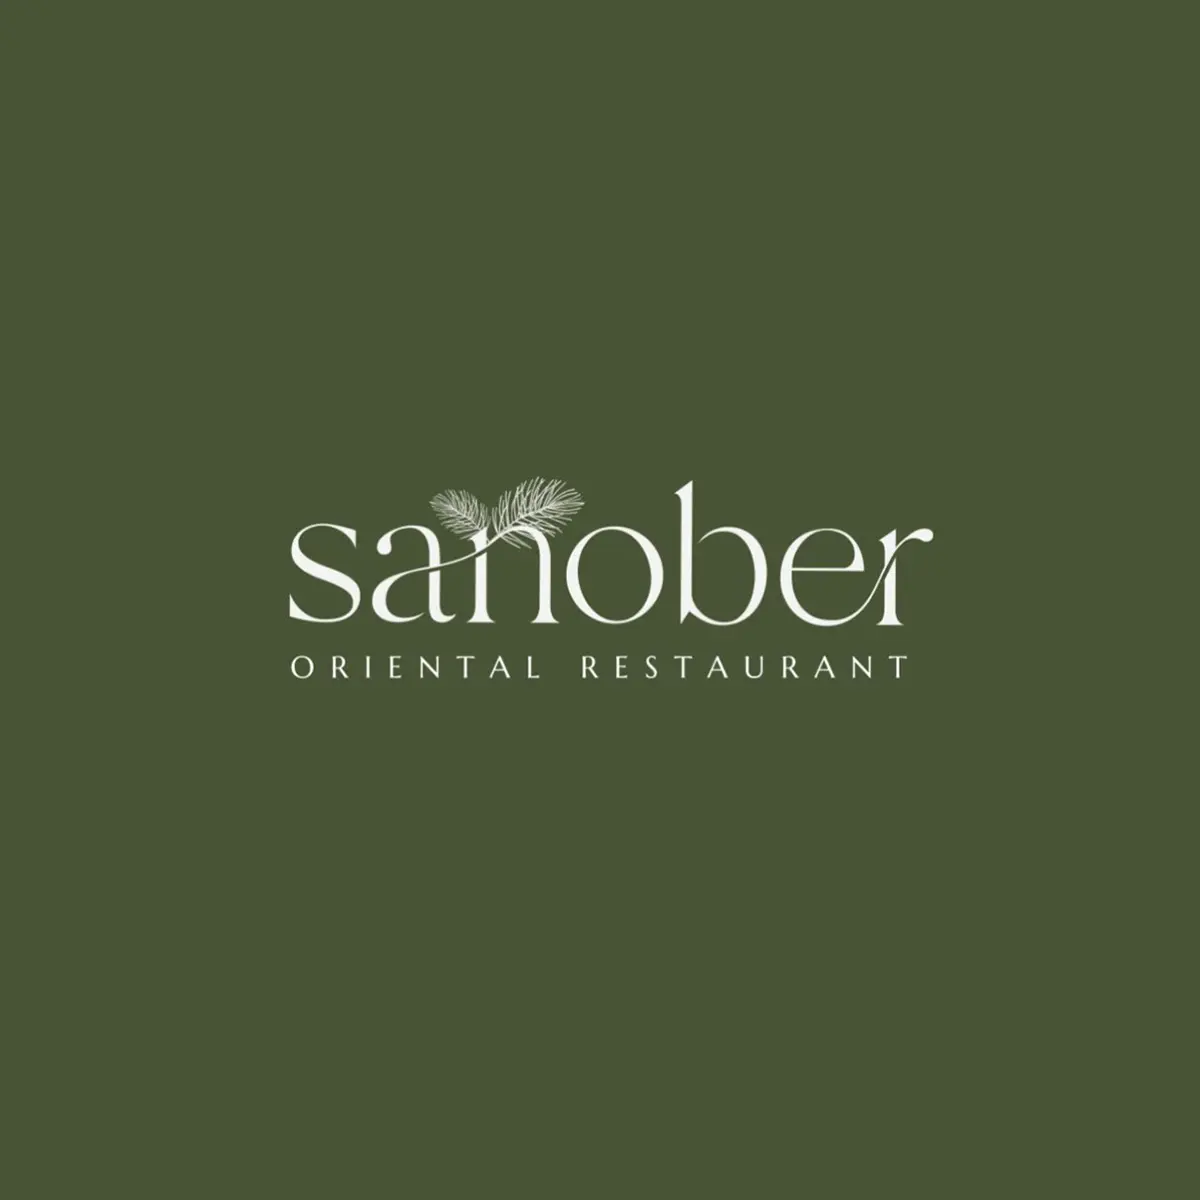 Sanober logo